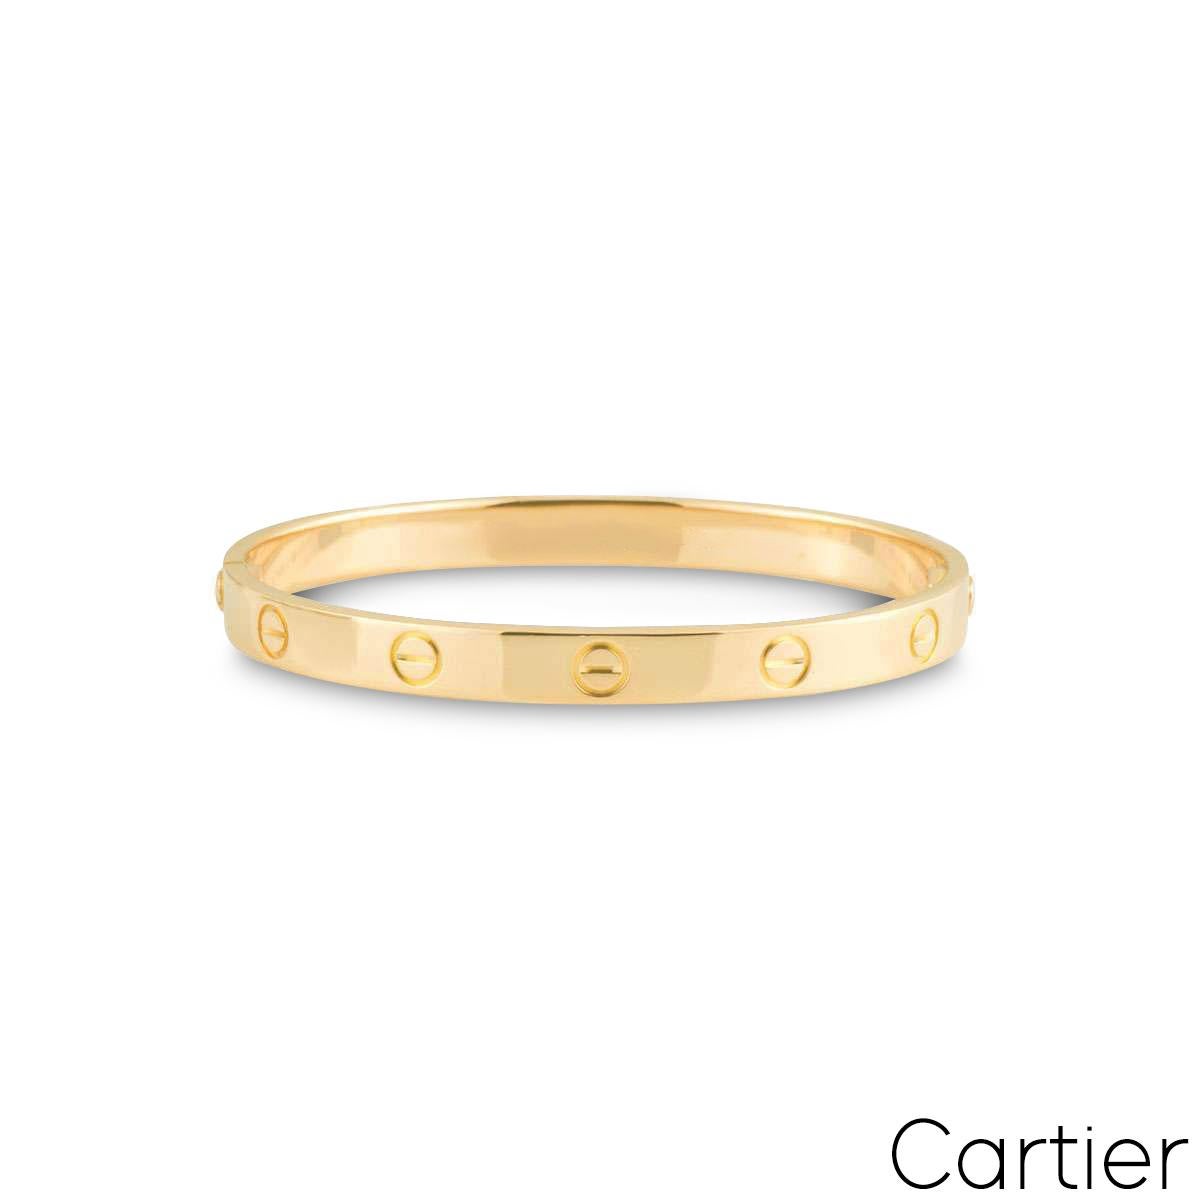 Ein Cartier-Armband aus 18 Karat Gelbgold aus der Collection'S Love. Das Armband ist am äußeren Rand mit dem Schraubenmotiv versehen und weist die neue Verschraubung auf. Dieses Armband ist eine Größe 19 und hat ein Bruttogewicht von 36,6 Gramm.